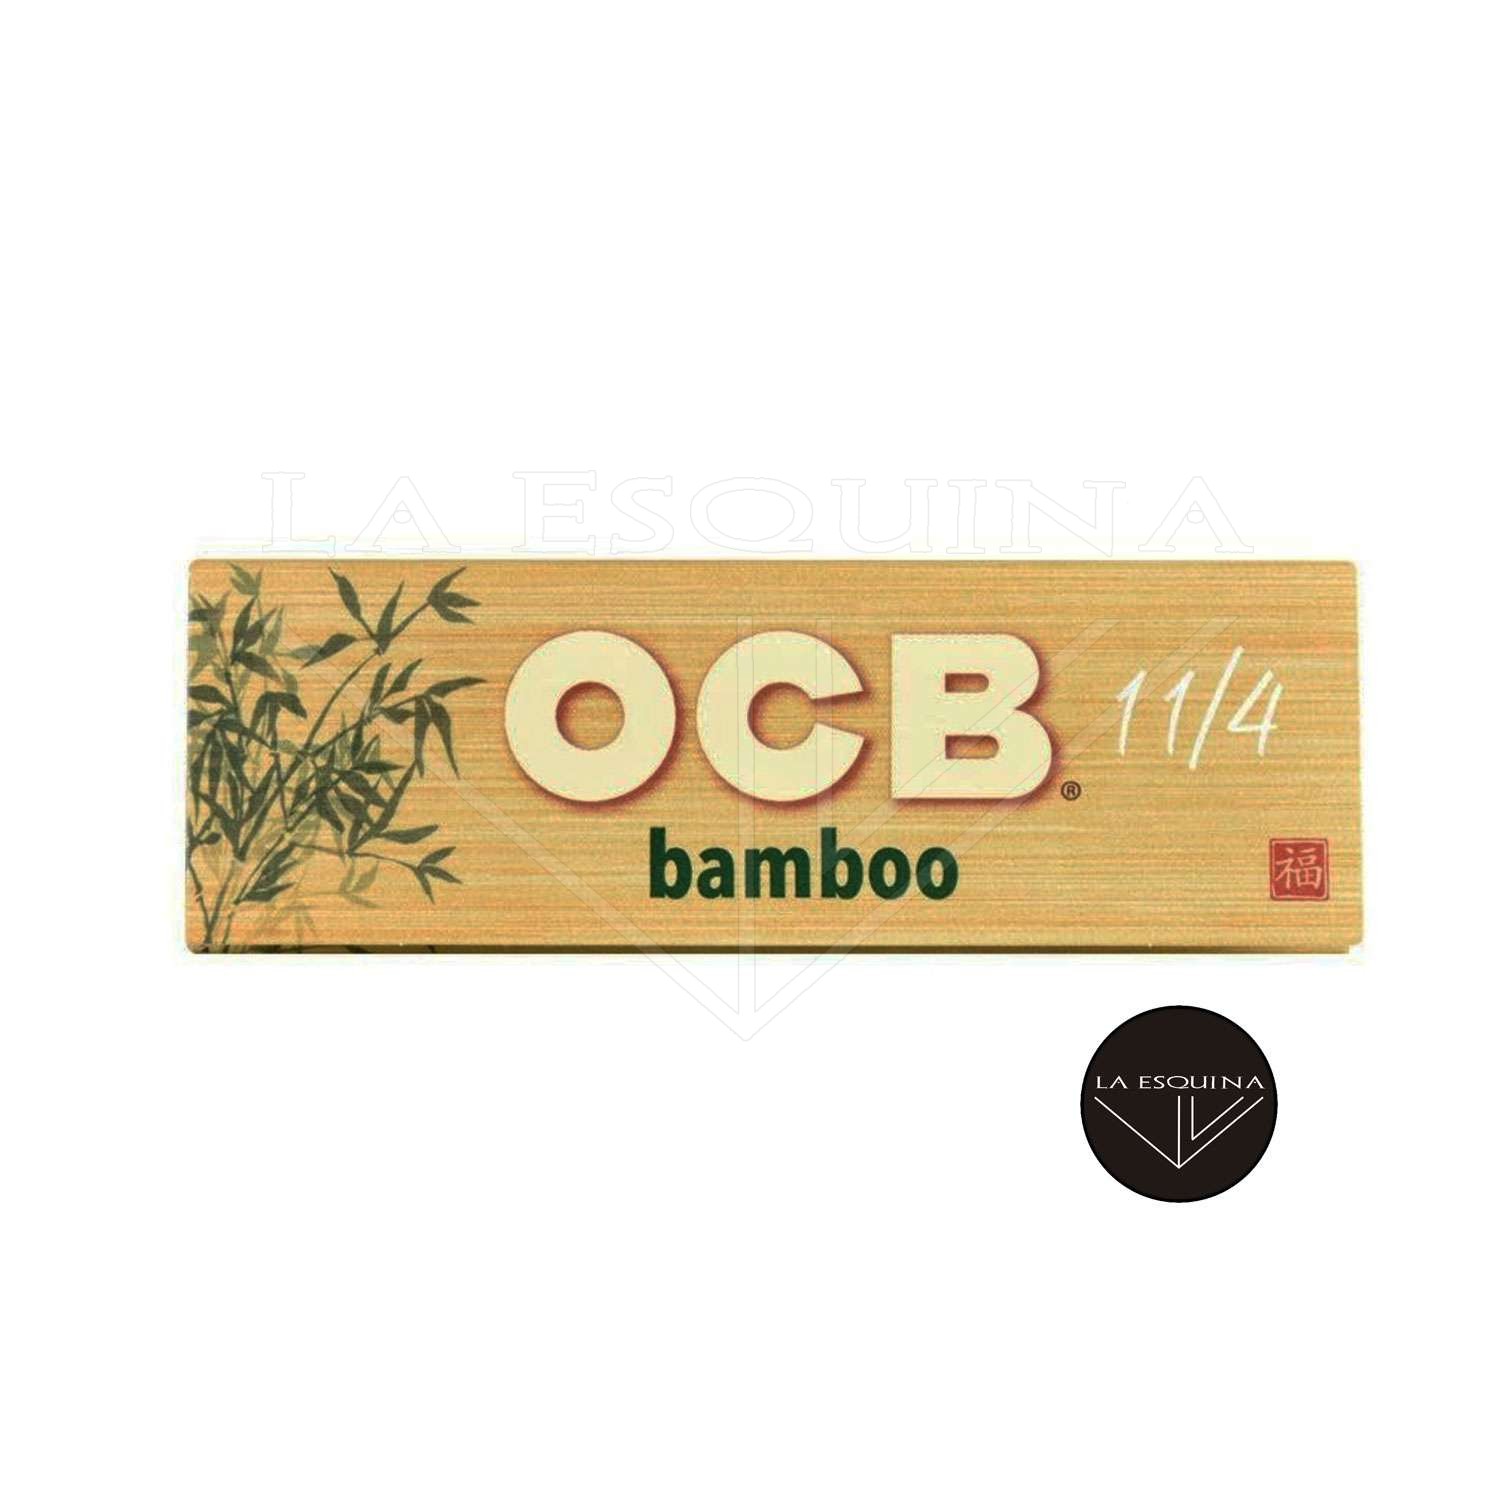 Comprar online Máquina de liar OCB bambú 78mm 1 1/4. al mejor precio.